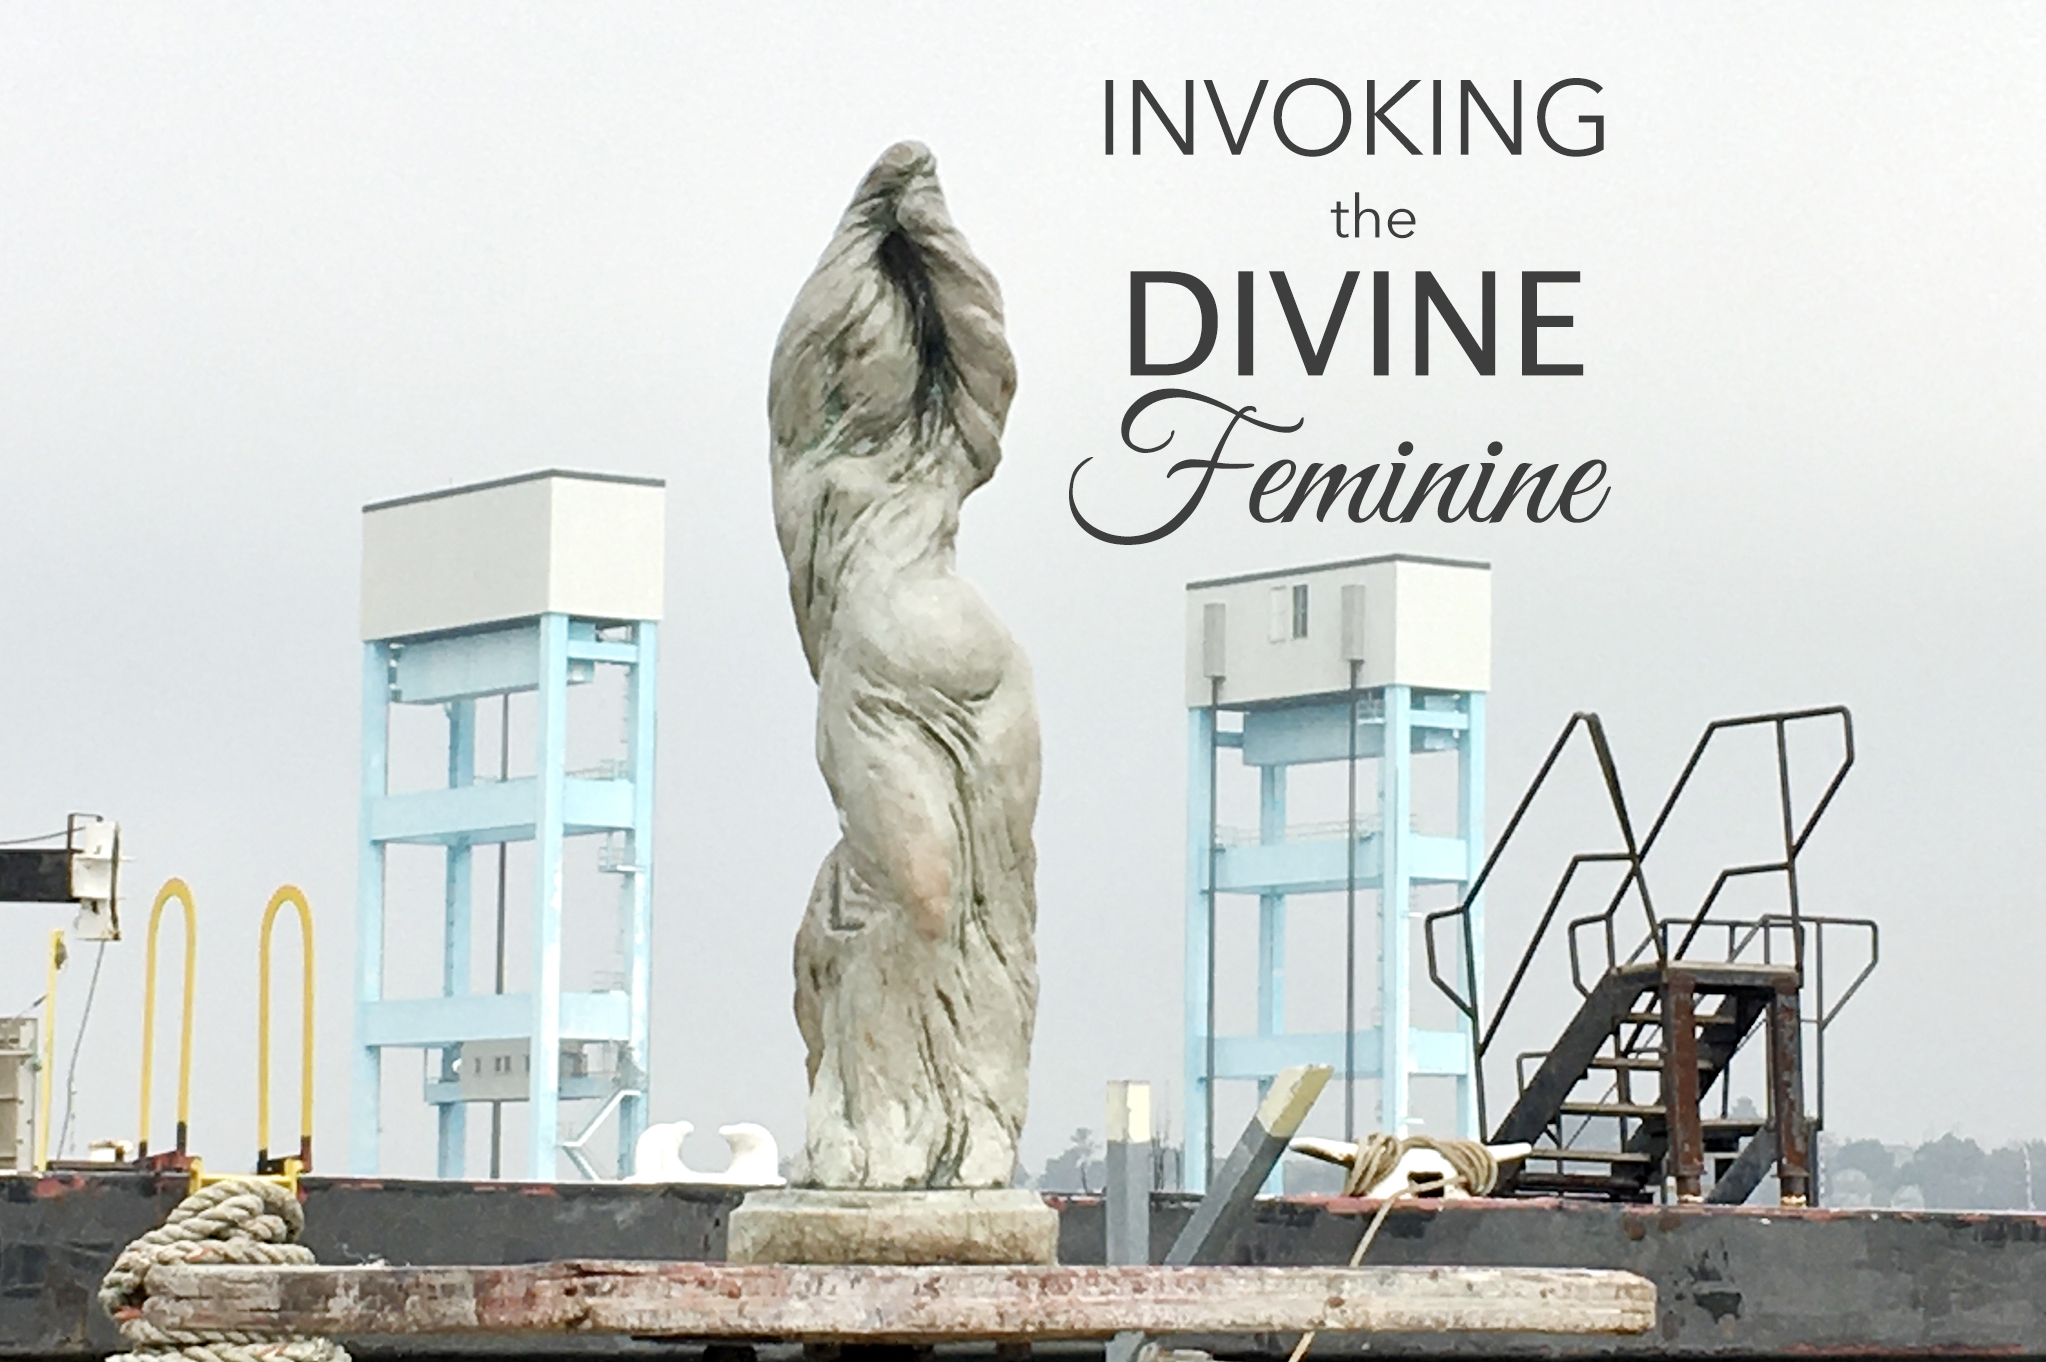 Invoking the Divine Feminine